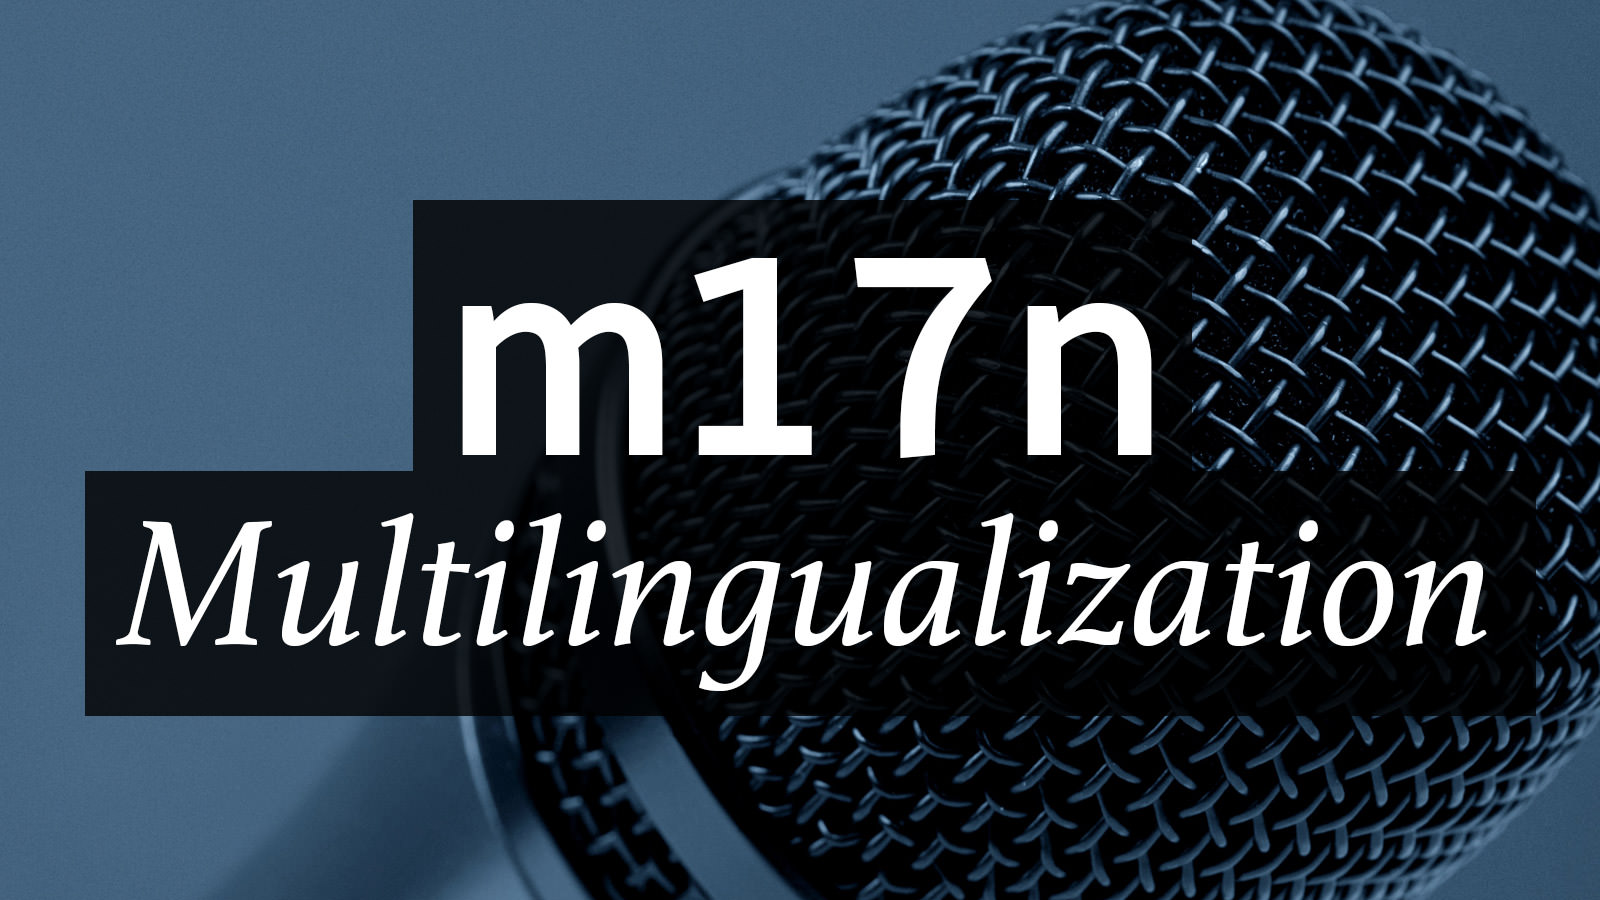 Numeronym for Multilingualization